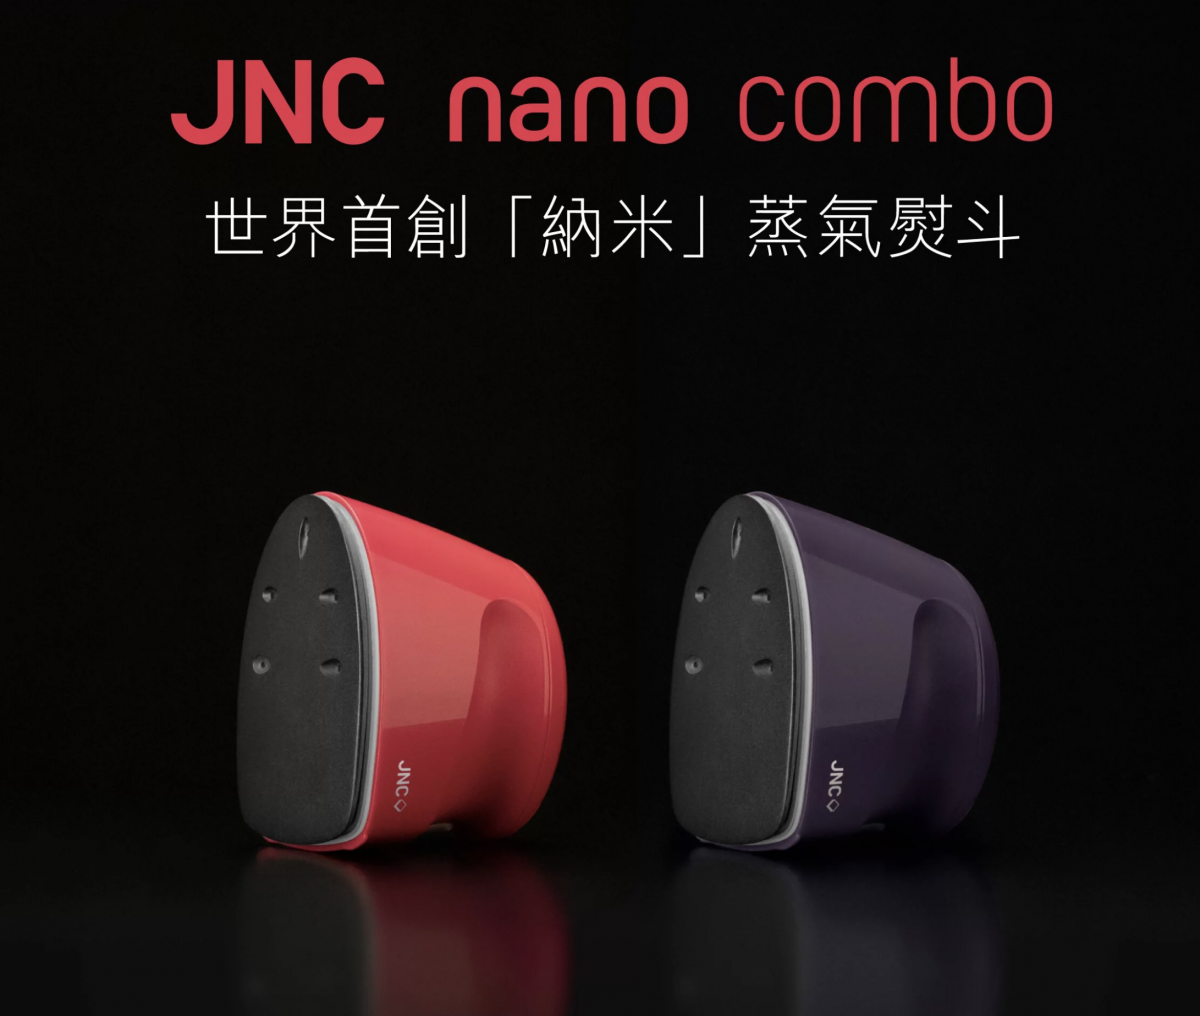 JNC nano combo - World's 1st【Steam sterilization】